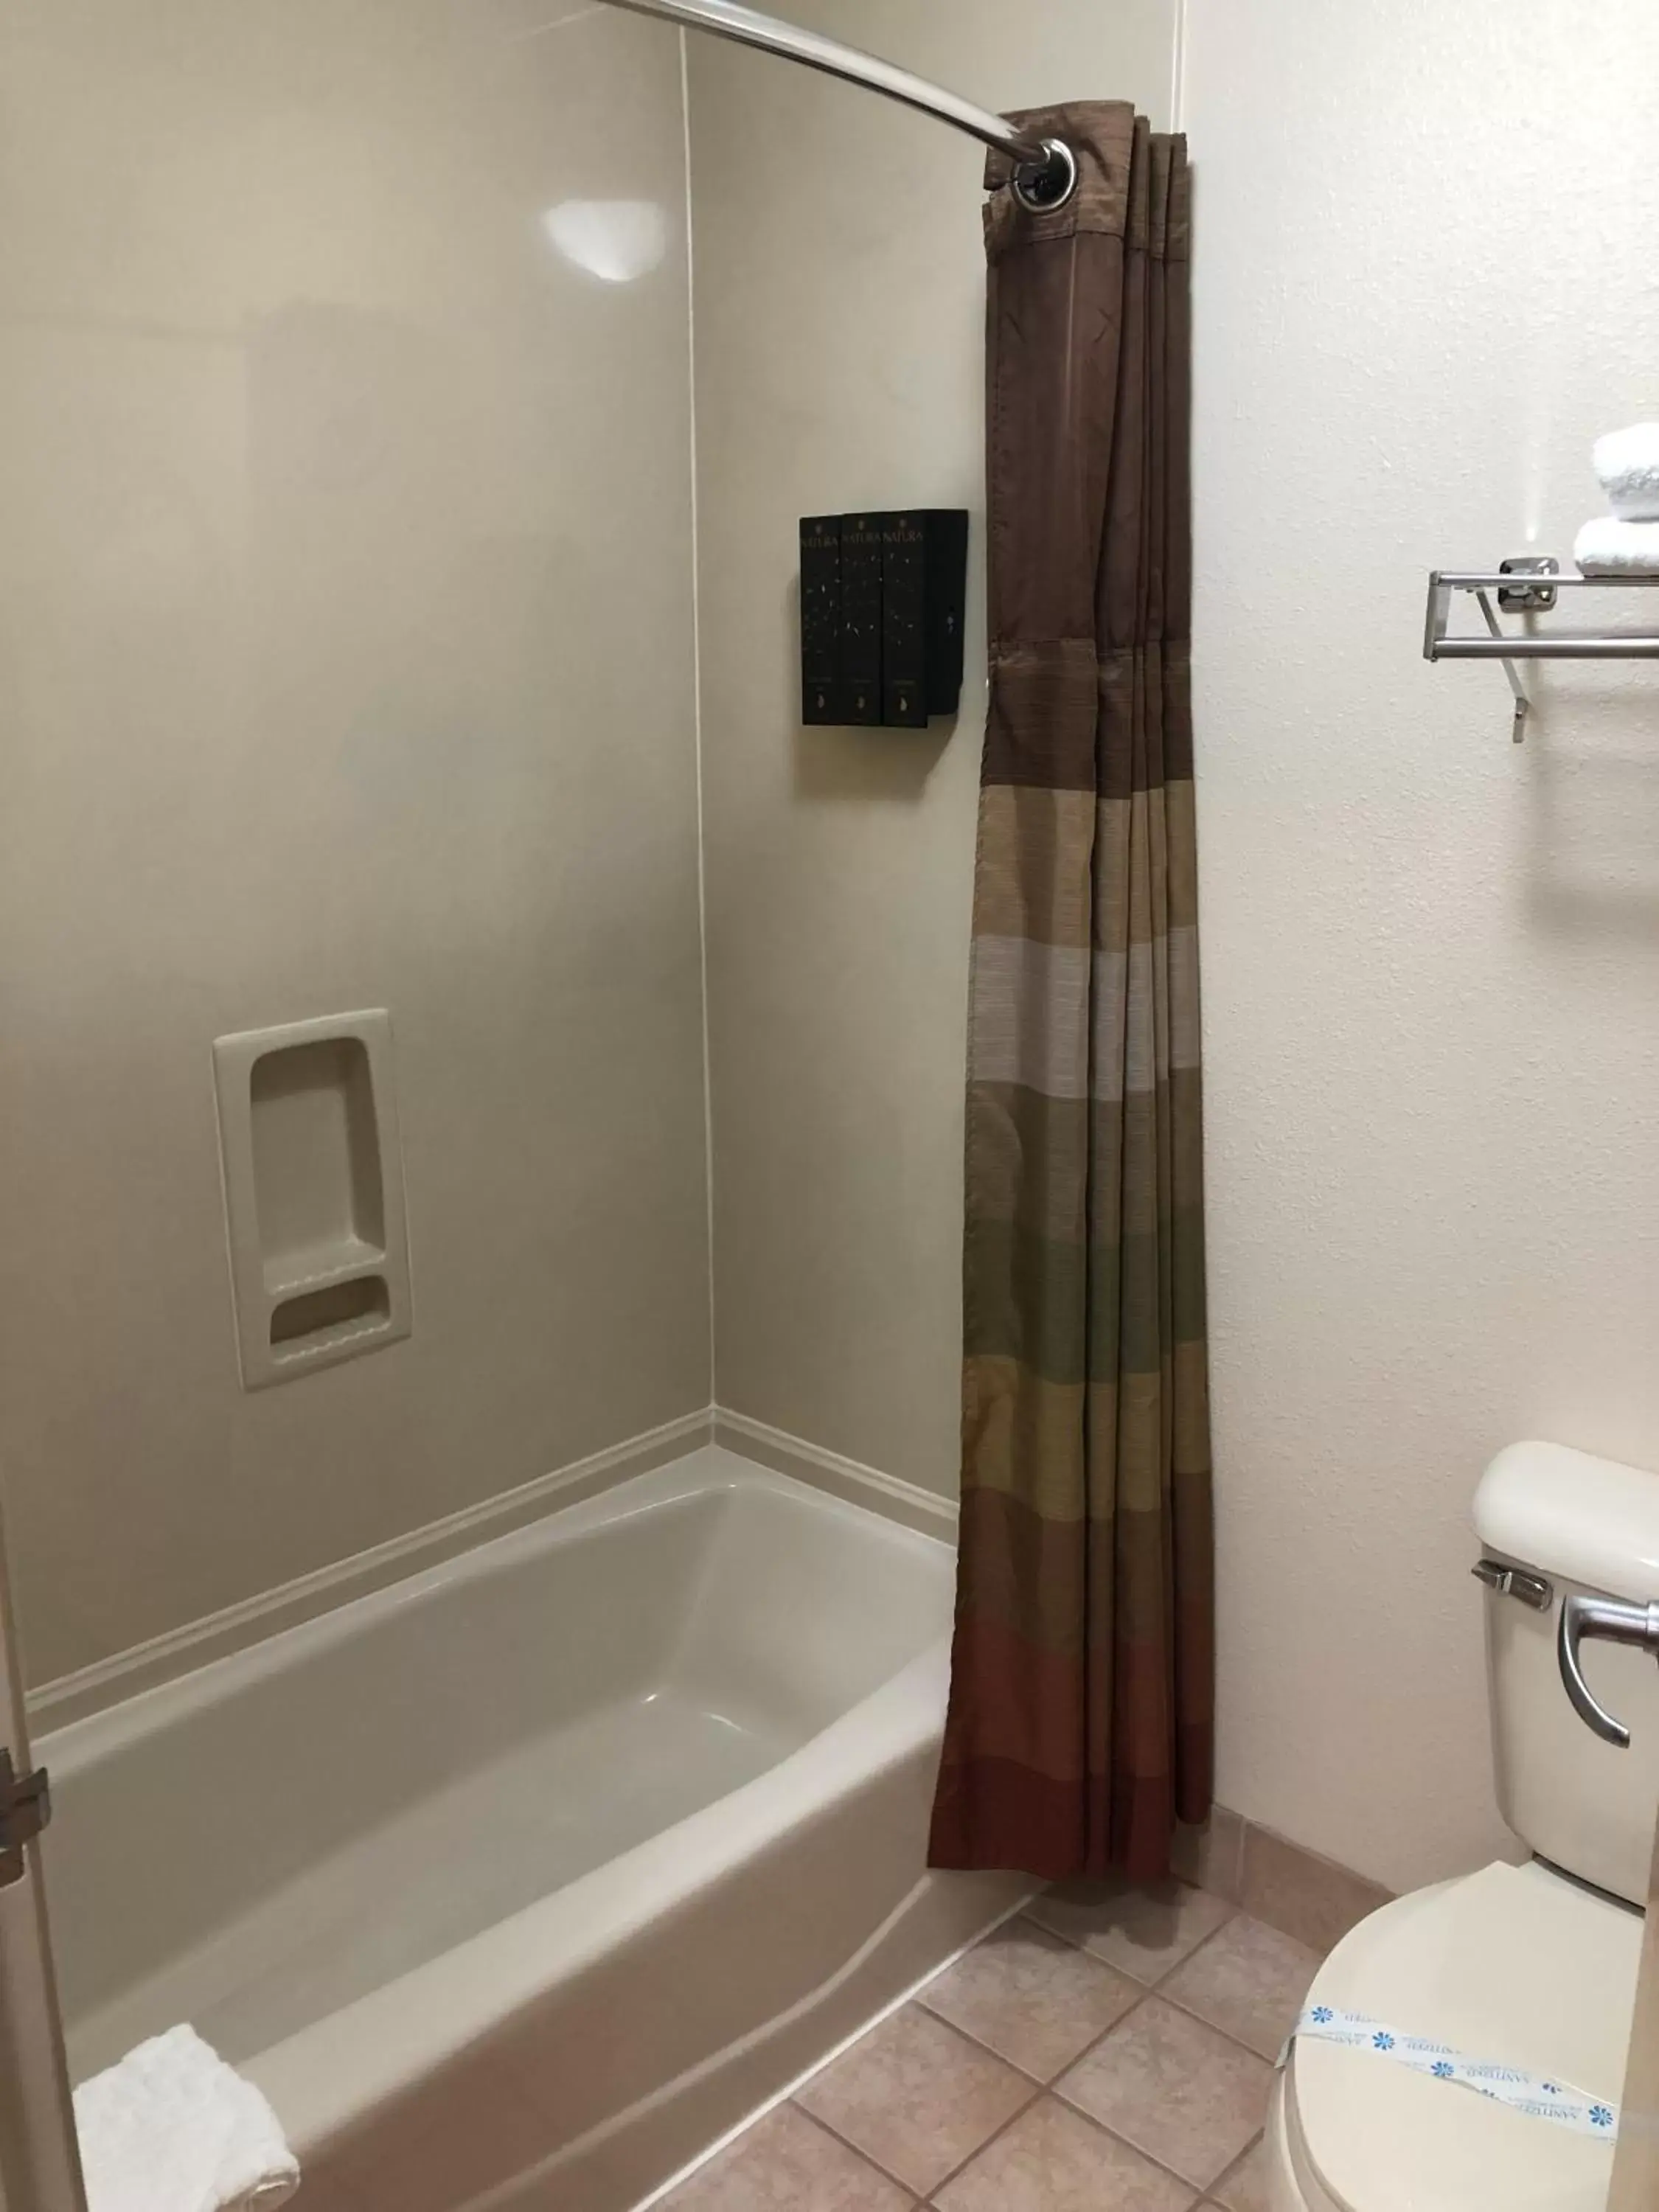 Bathroom in Best Western Dallas Inn & Suites